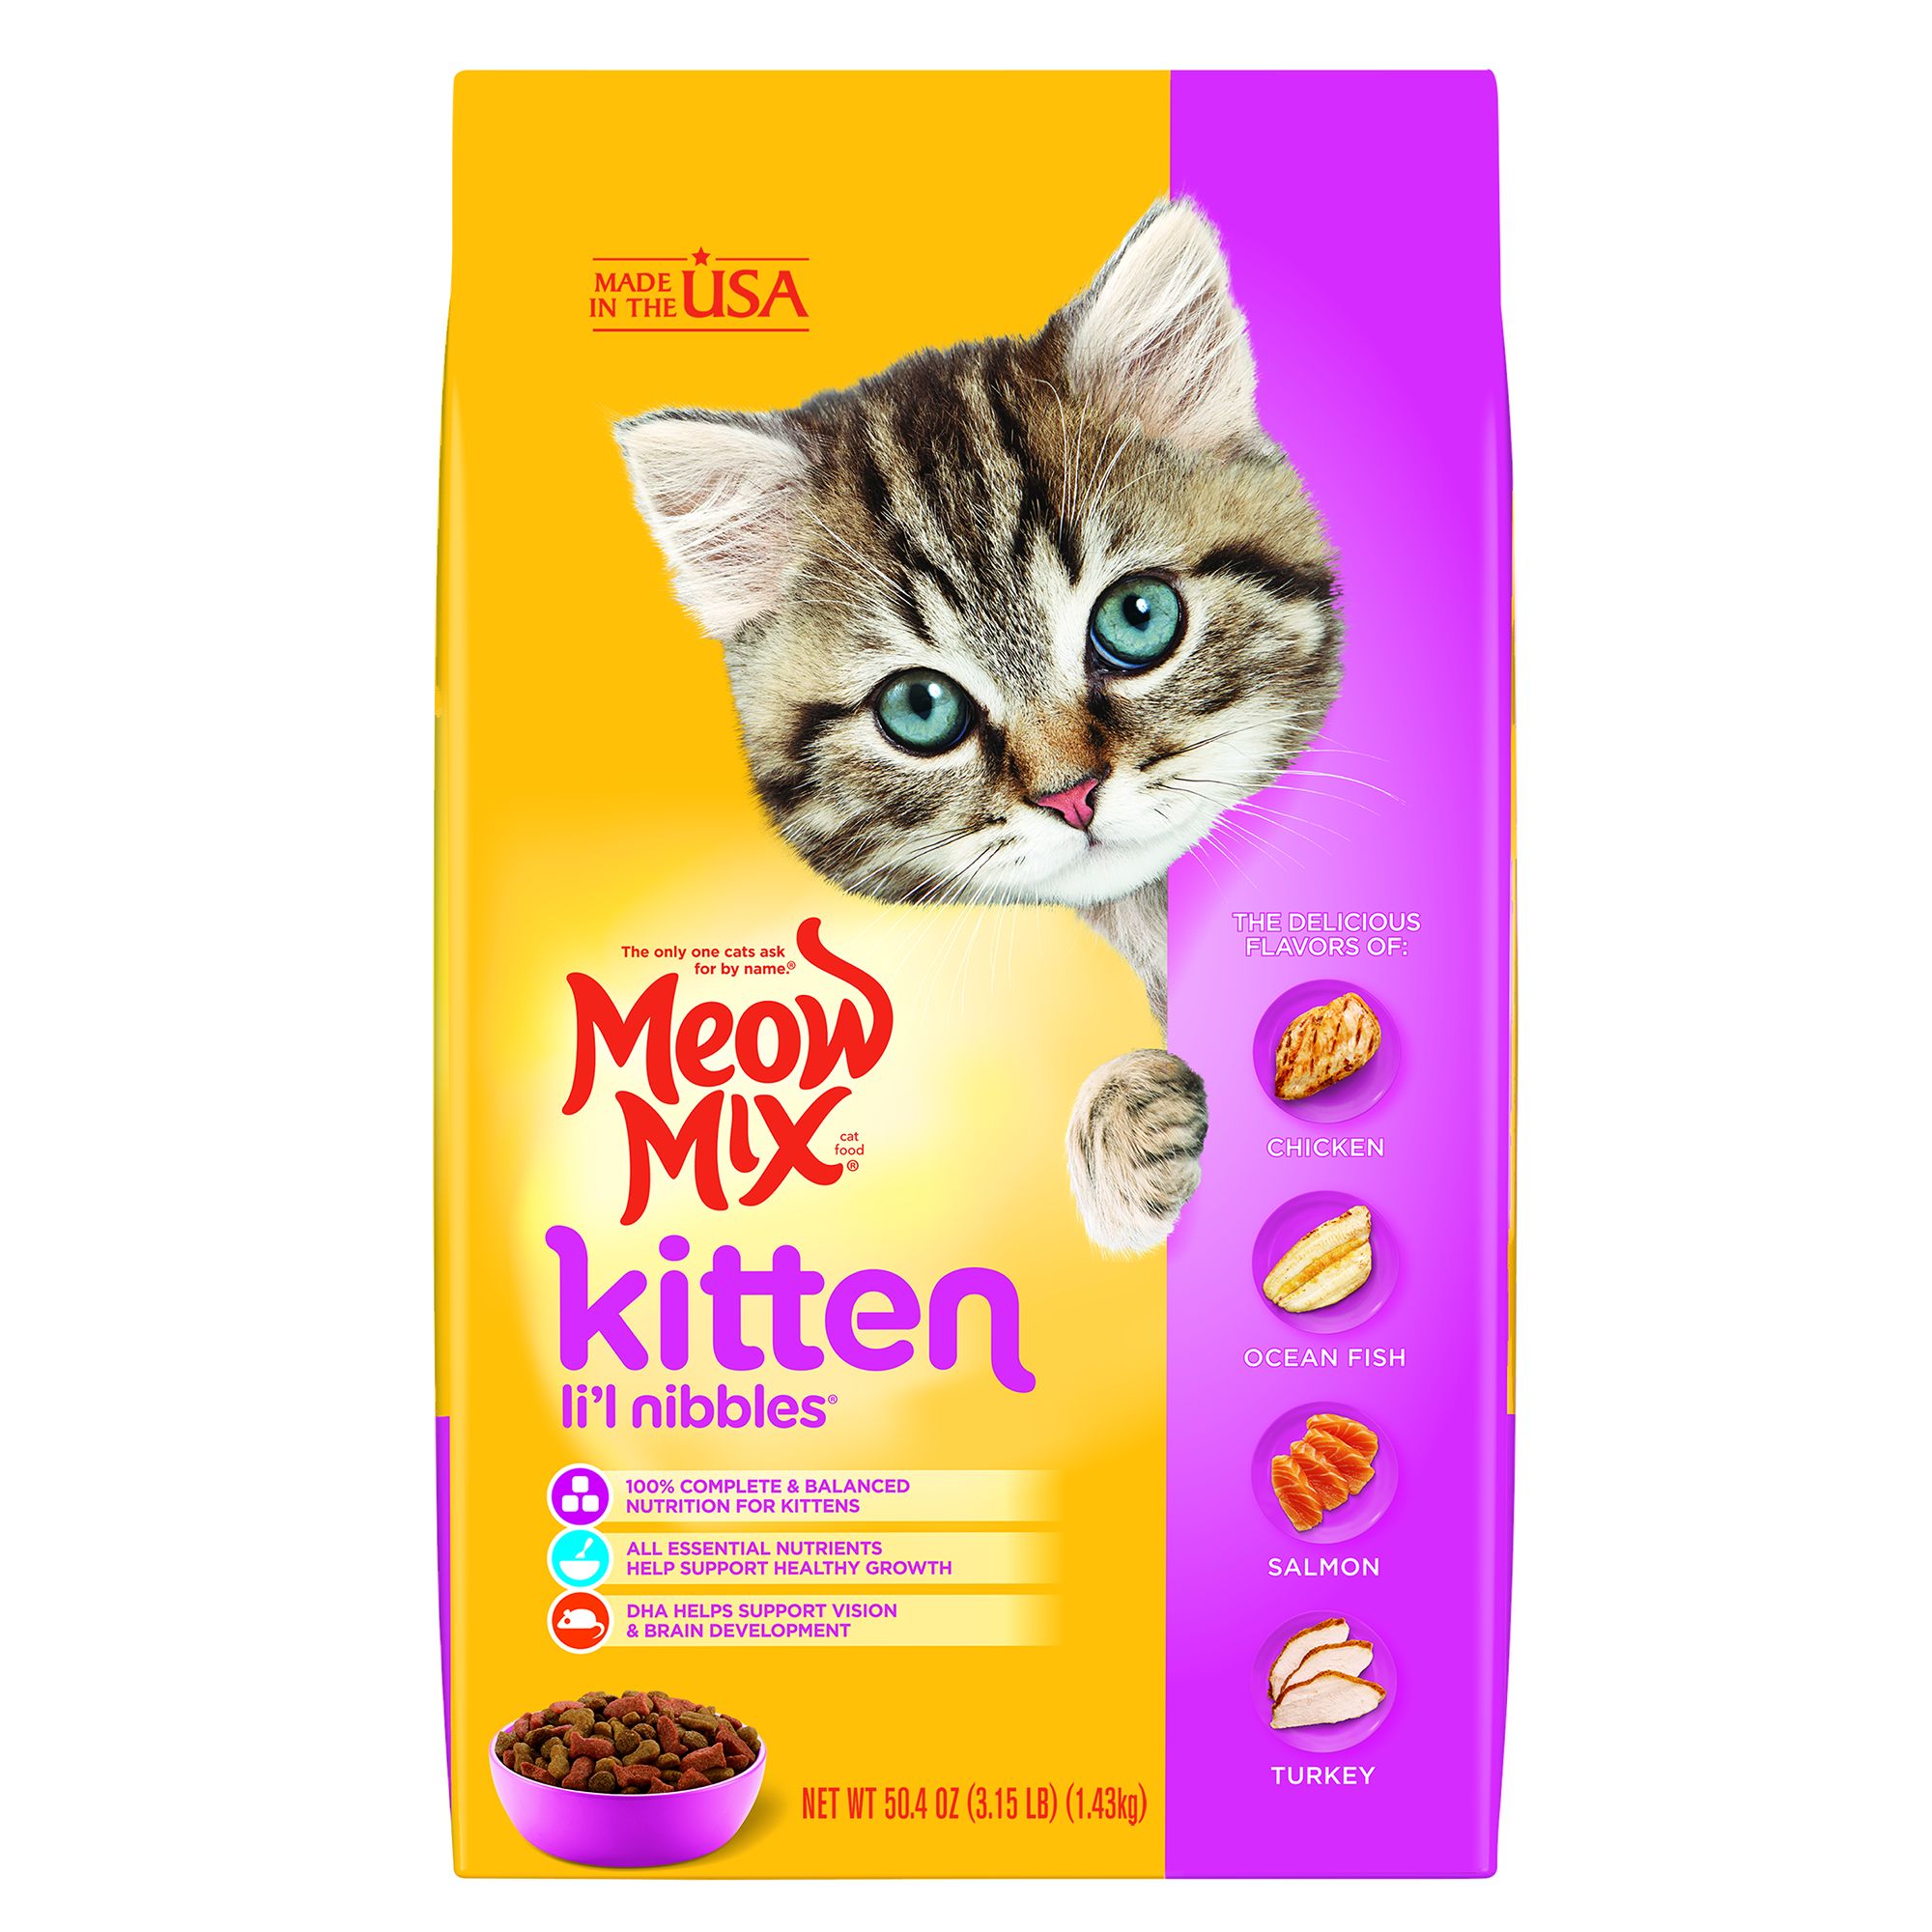 Meow Mix Kitten Li'l Nibbles Dry Cat Food - Chicken, Turkey, Salmon, Ocean Fish